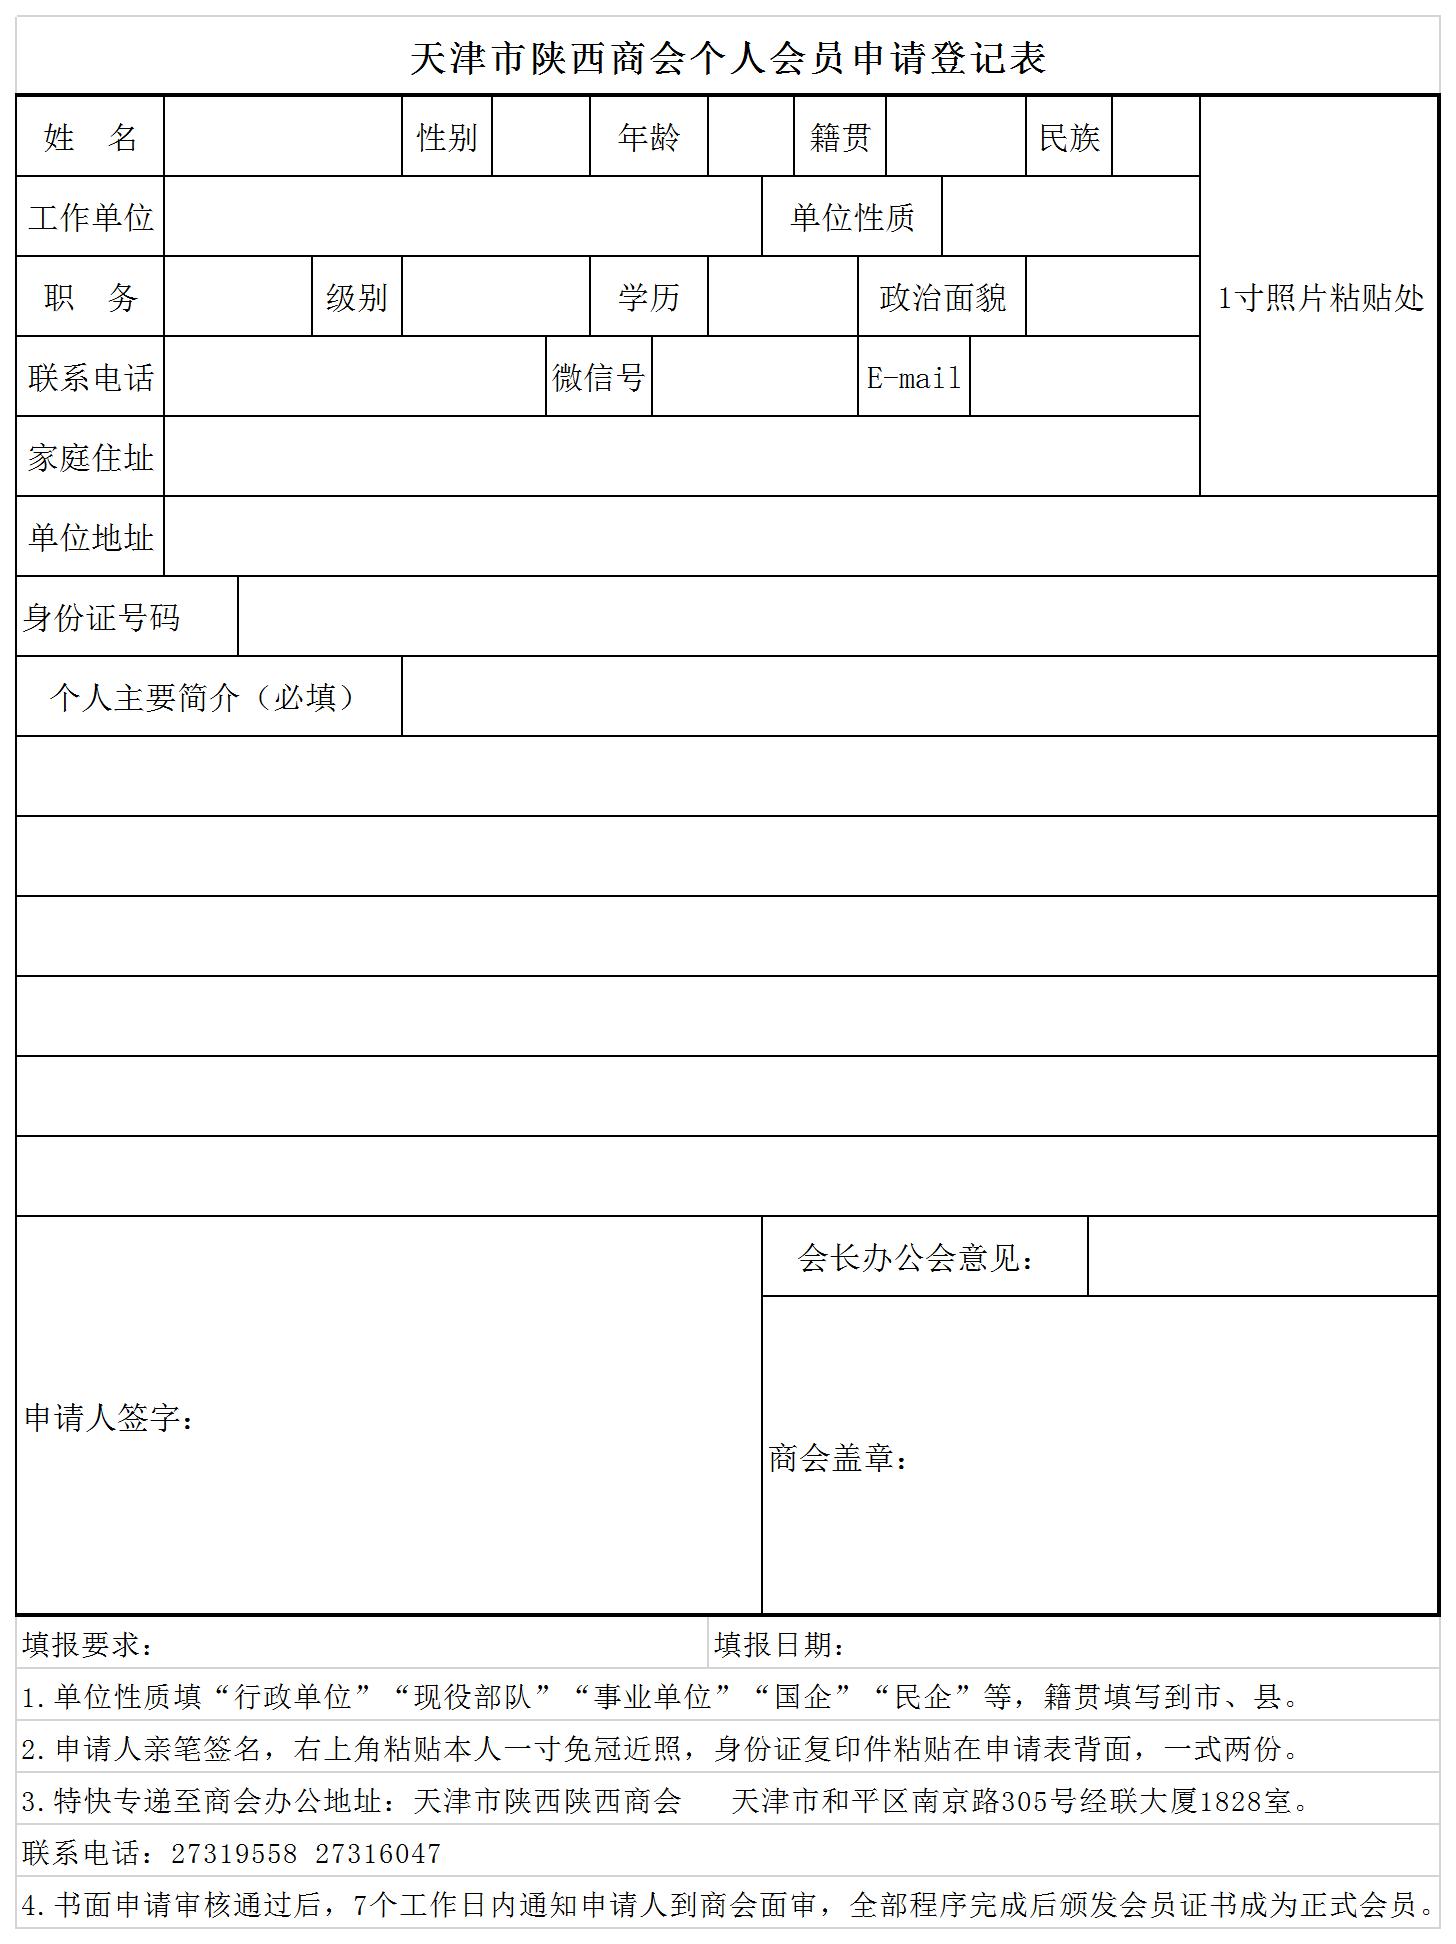 天津市陕西商会个人会员申请表.jpg